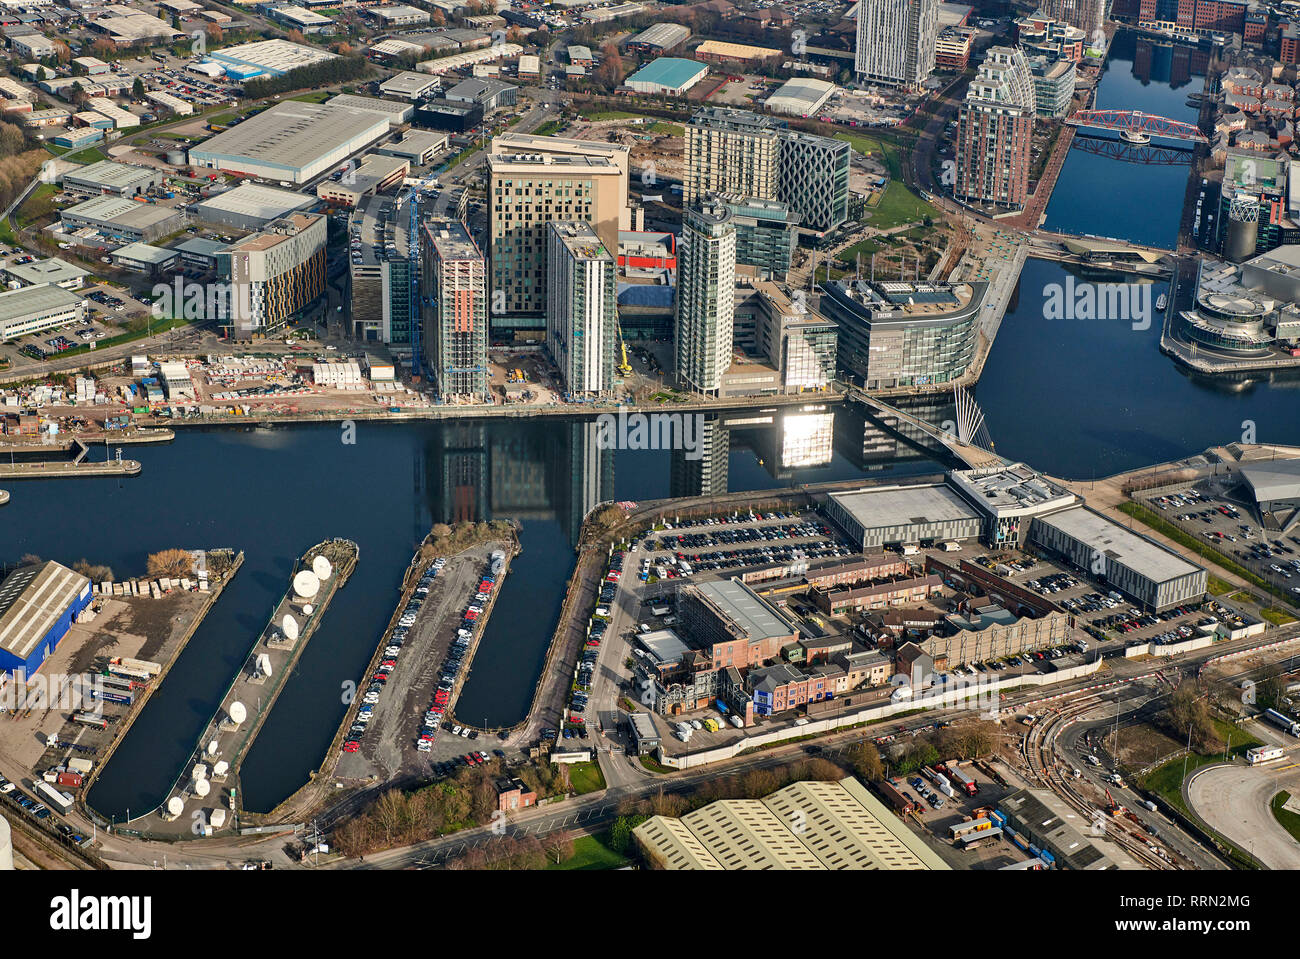 Une vue aérienne de Media City, Salford Quays, Manchester, North West England, UK Banque D'Images